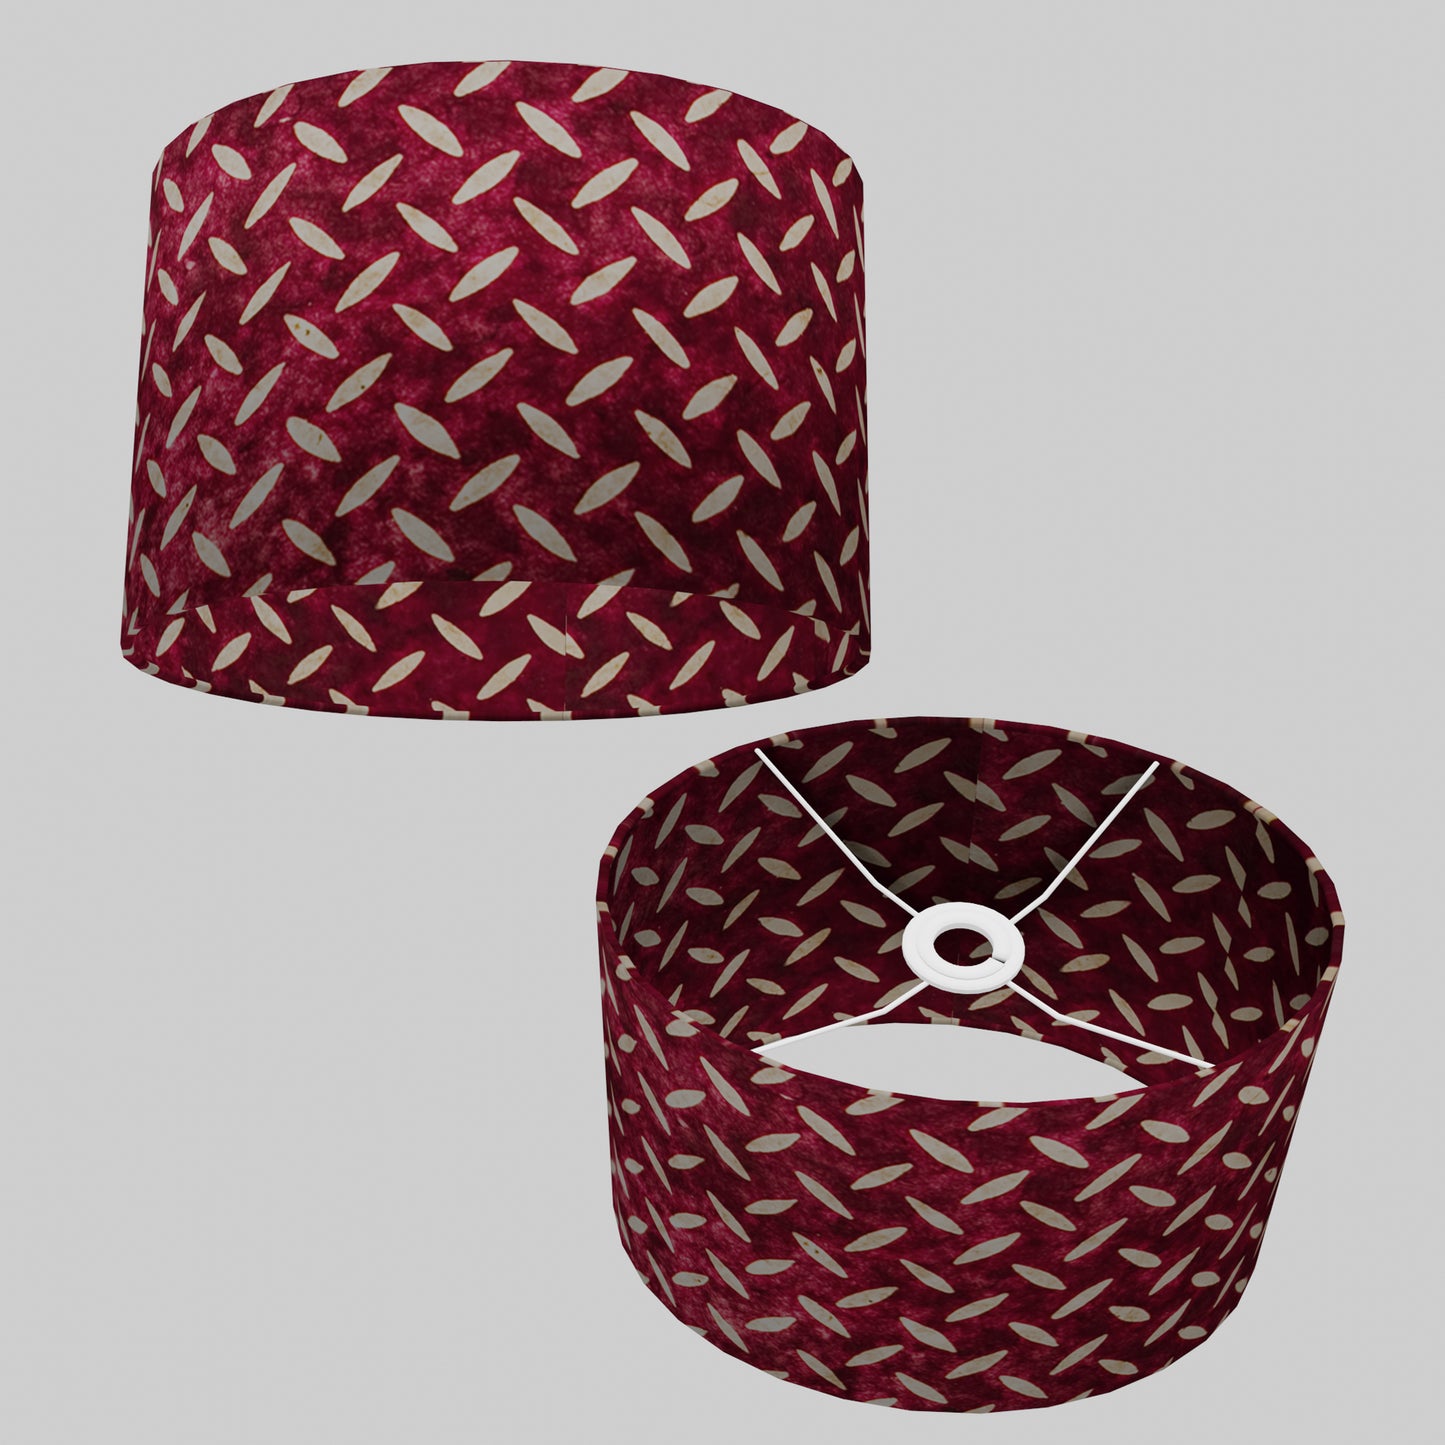 Oval Lamp Shade - P14 - Batik Tread Plate Cranberry, 30cm(w) x 20cm(h) x 22cm(d)